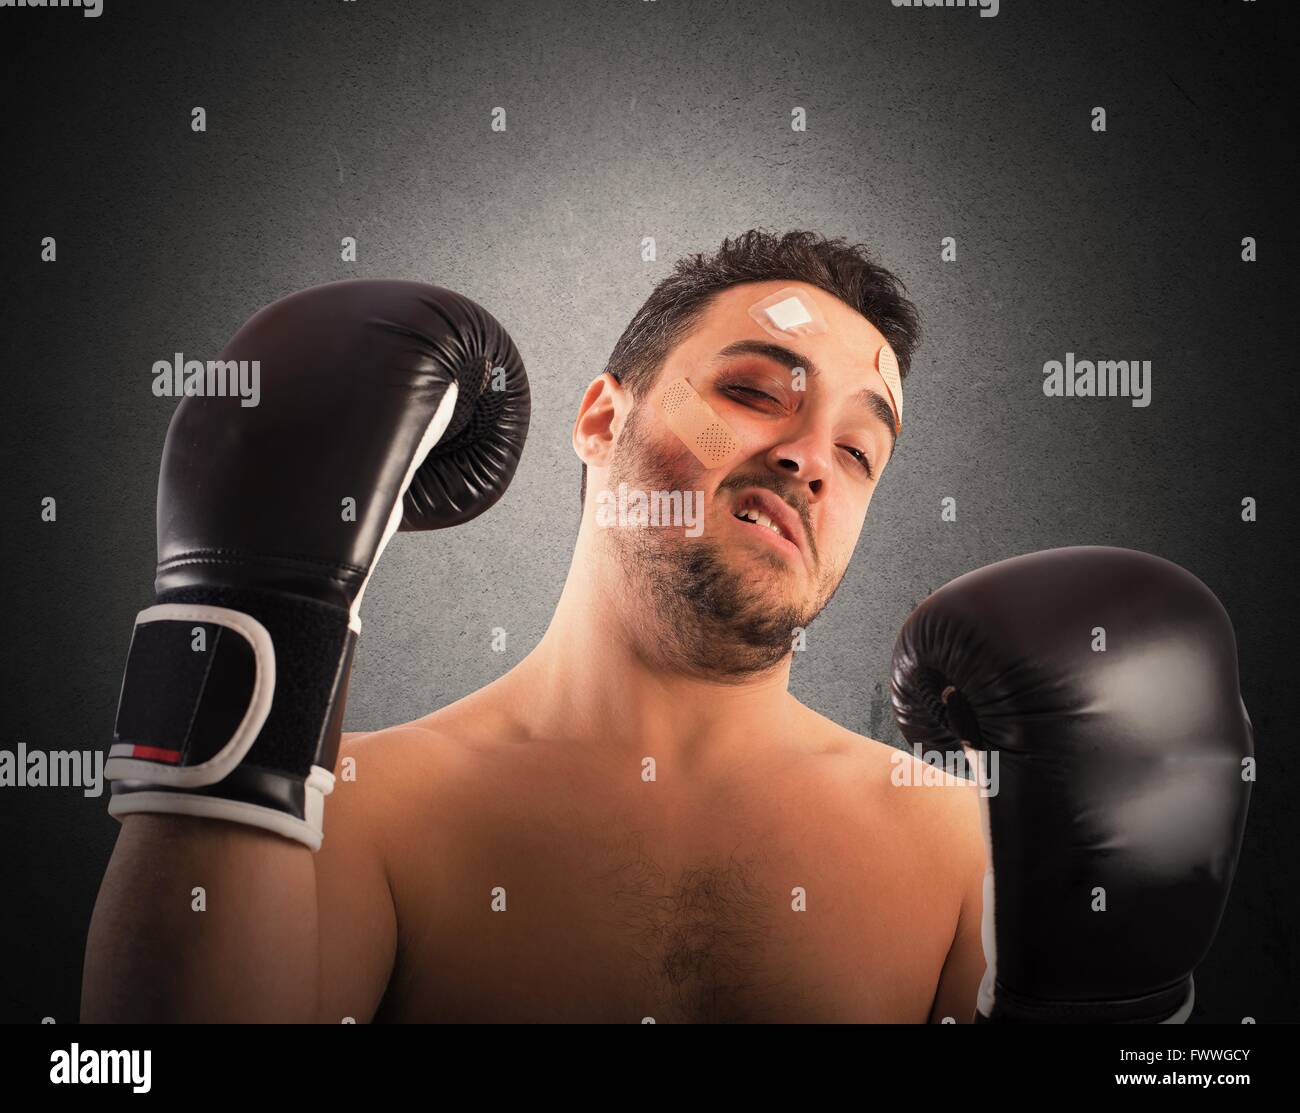 træt af tegnebog Modstander Beaten boxer hi-res stock photography and images - Alamy